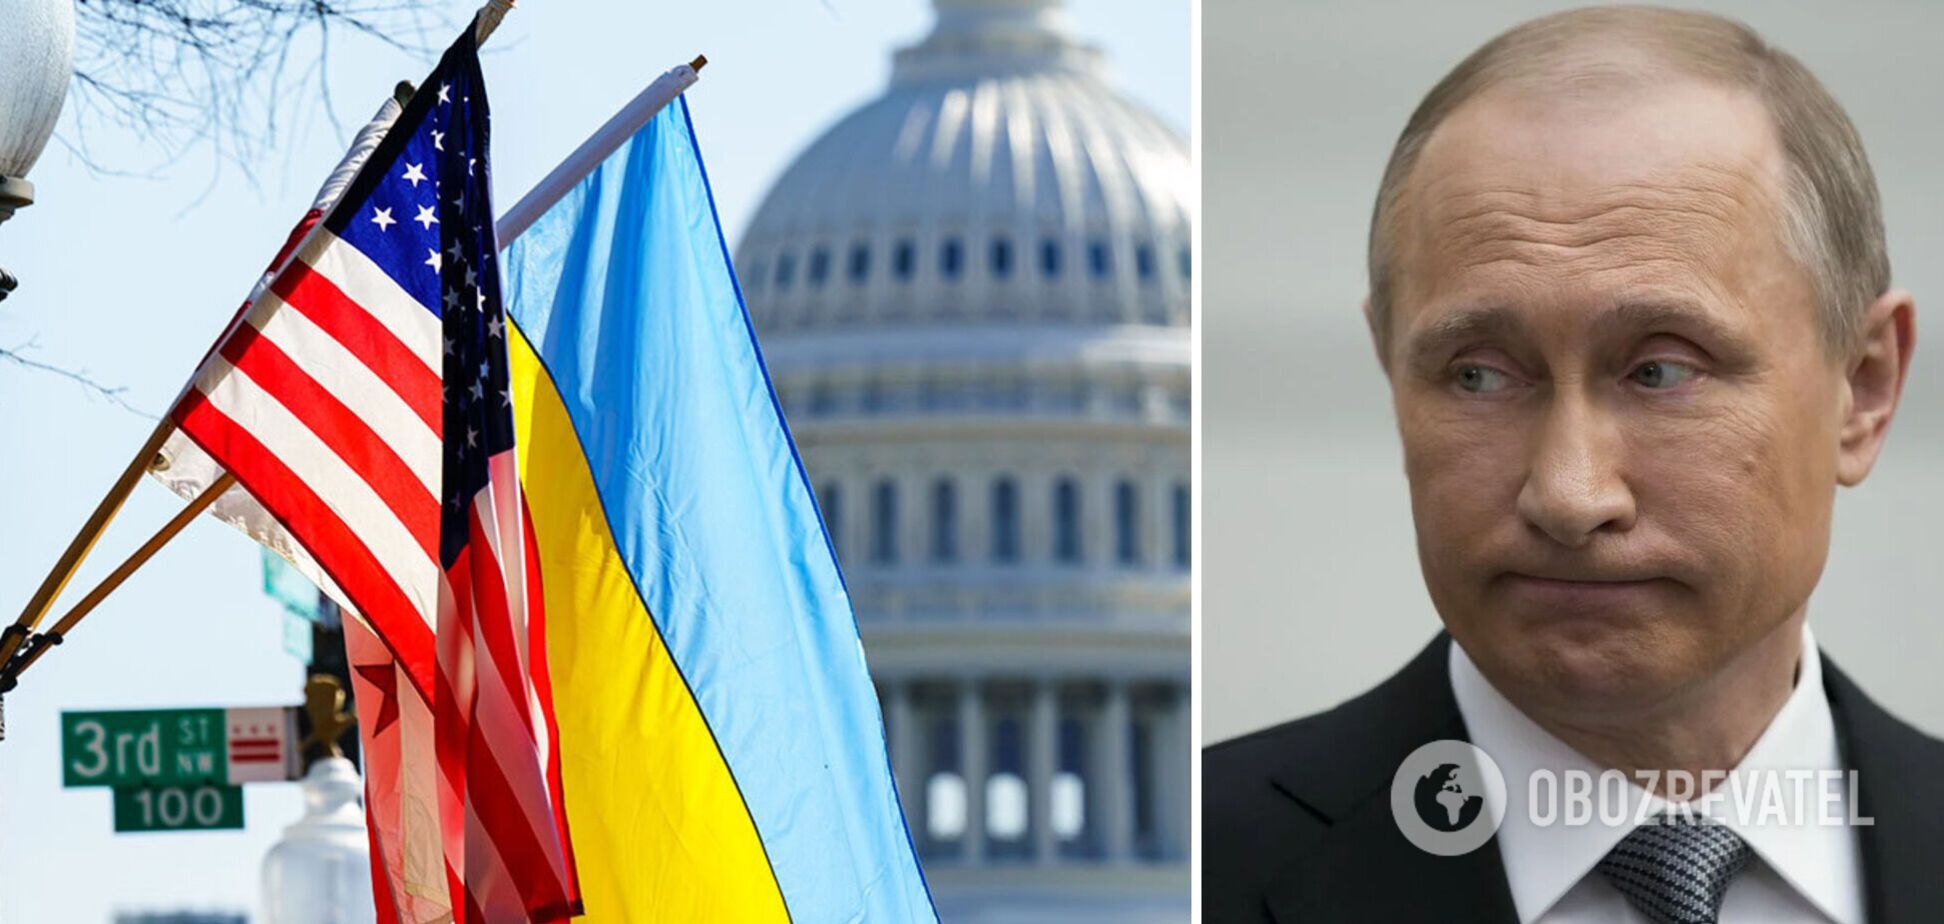  США передадут Украине конфискованные активы 